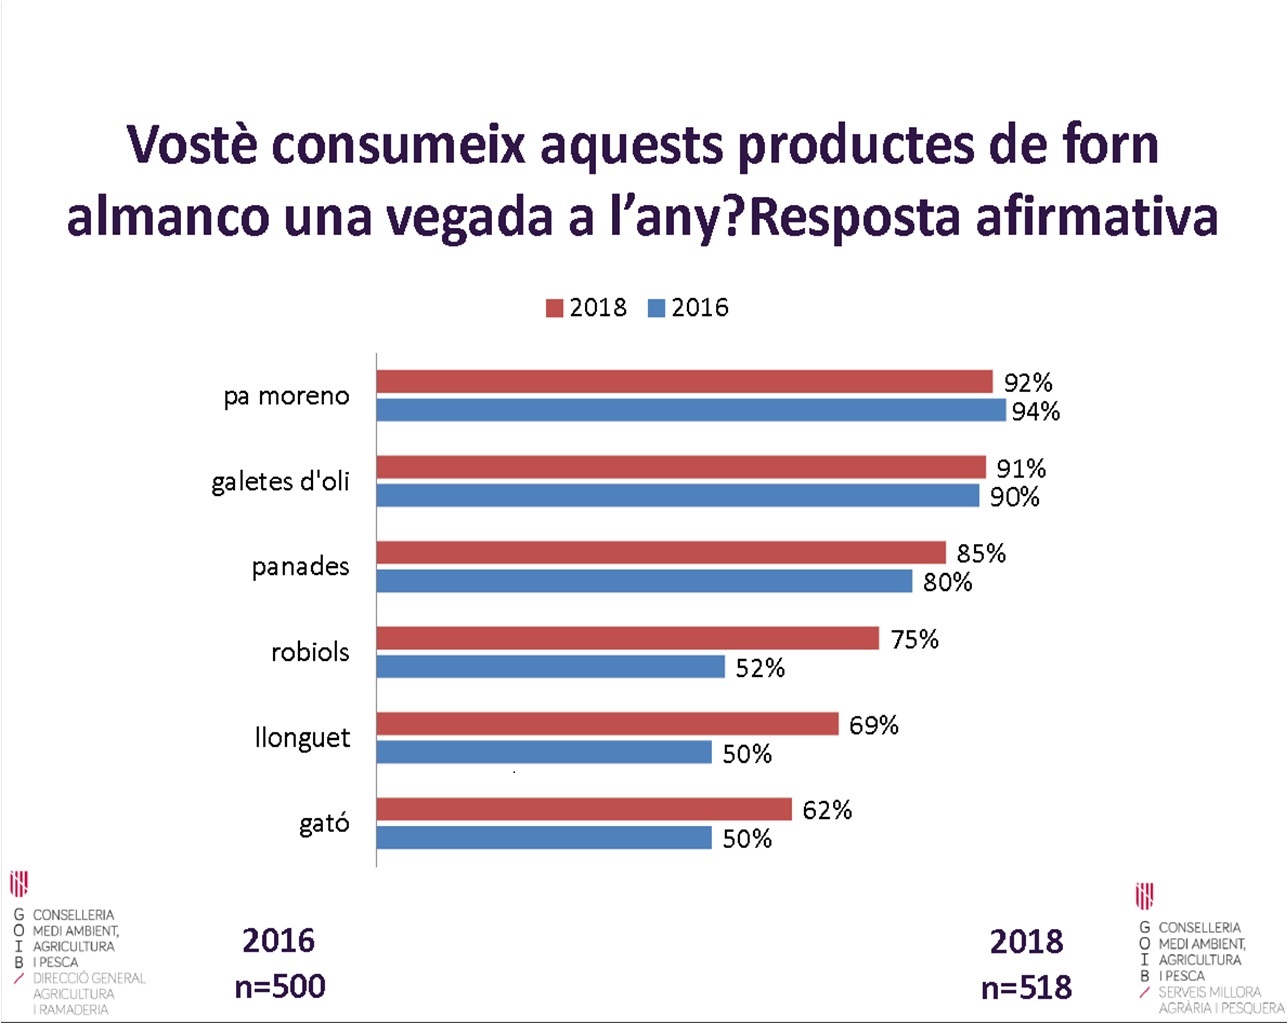 La compra de rubiols, gató i llonguet ha sofert un fort increment respecte al 2016 - Notícies - Illes Balears - Productes agroalimentaris, denominacions d'origen i gastronomia balear